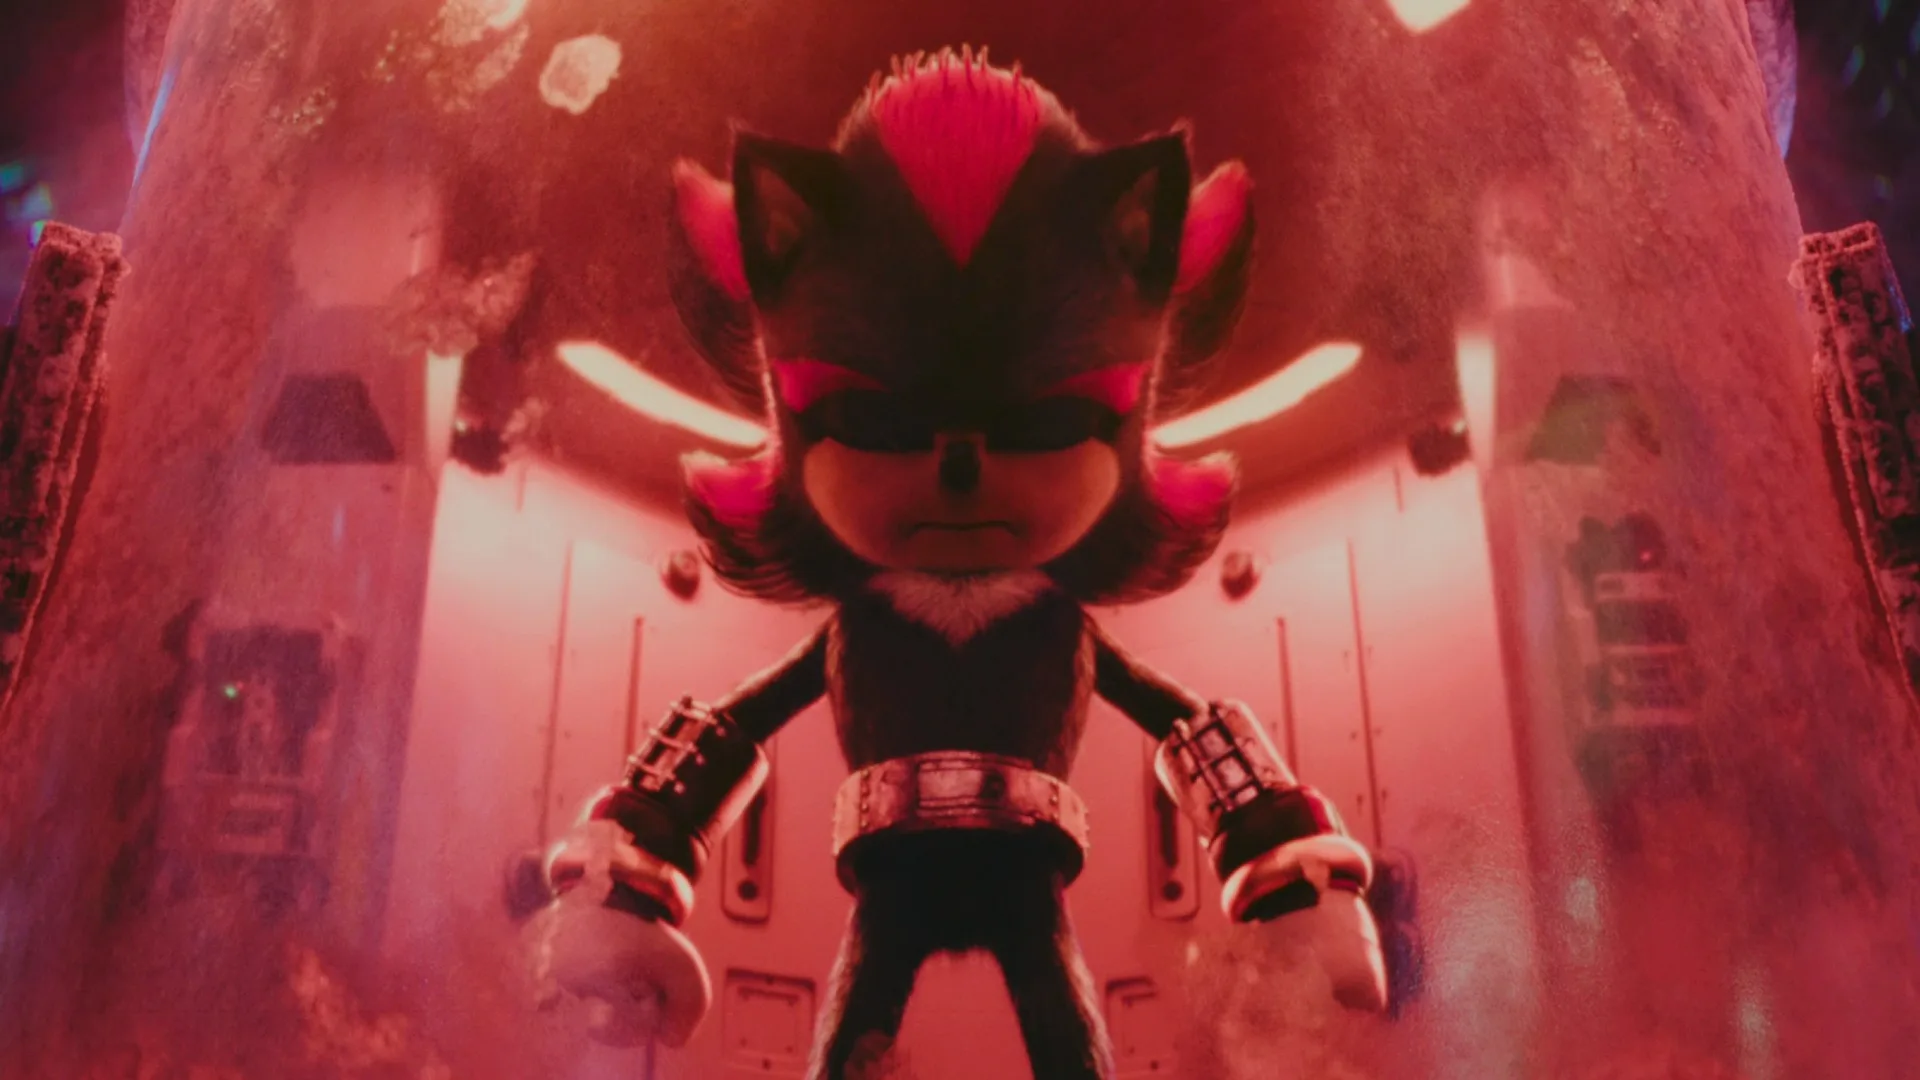 Shadow the hedgehog escena postcréditos de Sonic 2